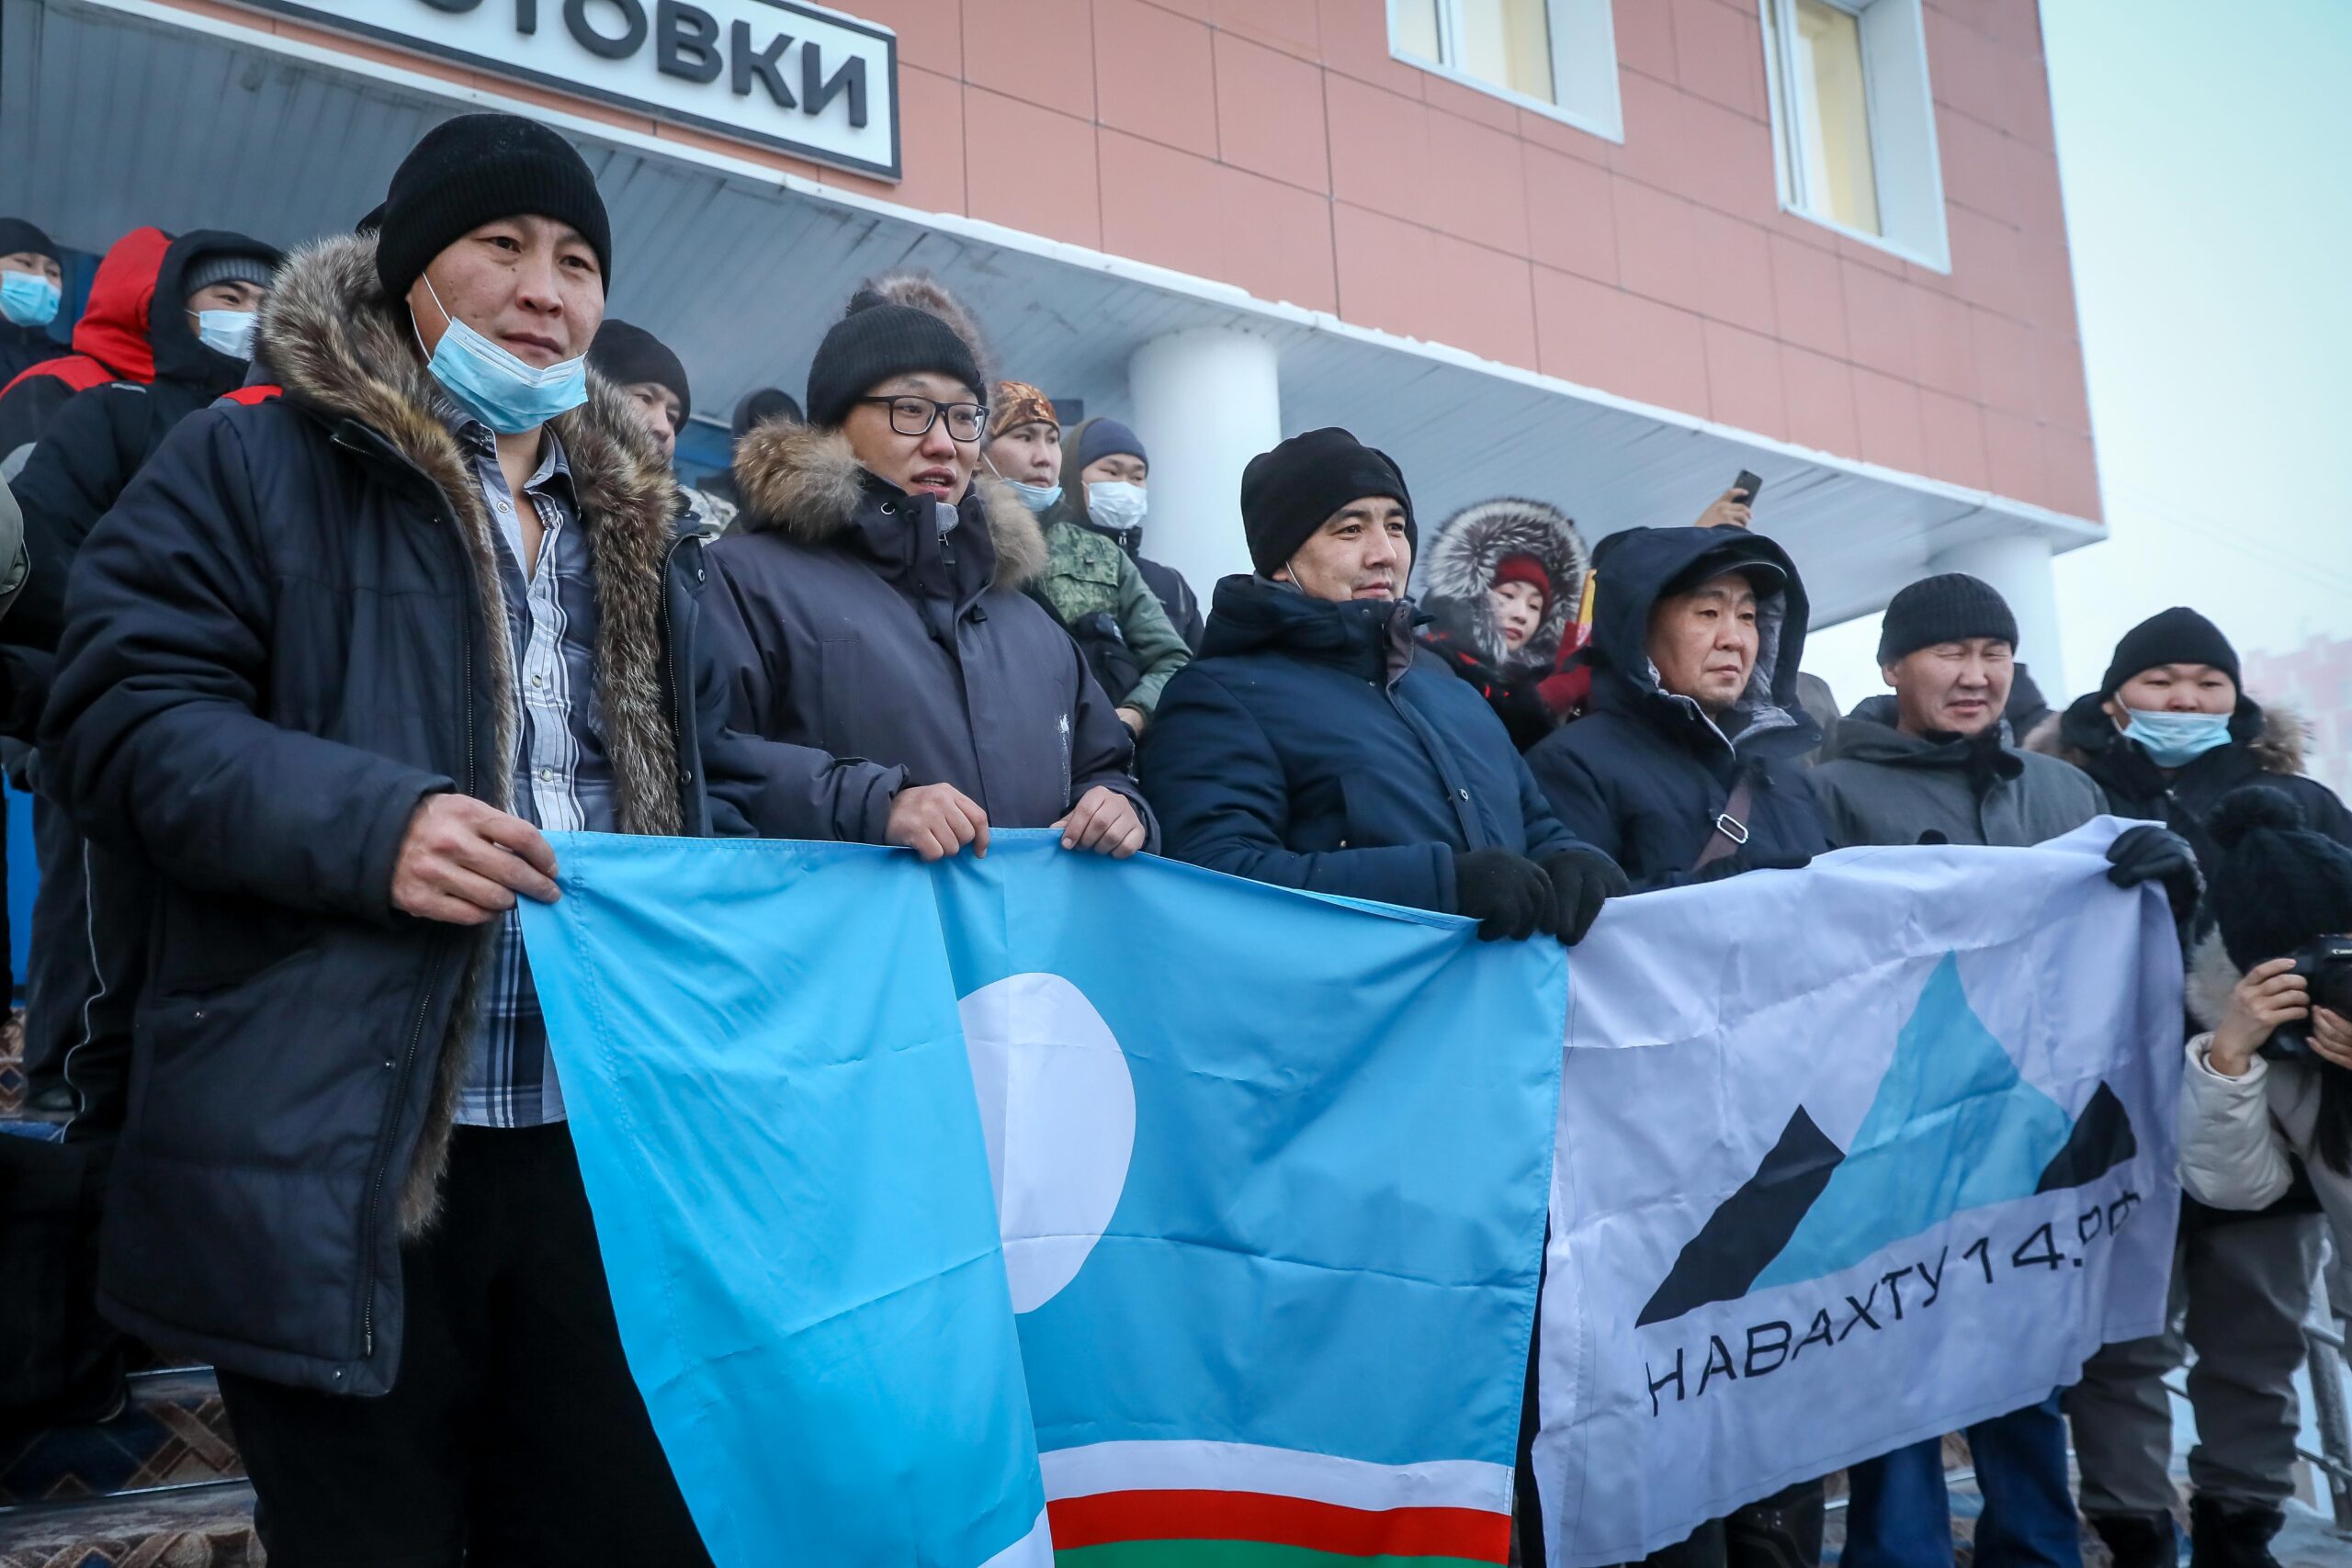 Сто молодых специалистов получили работу в промышленности по проекту«Навахту14.рф» в Якутии